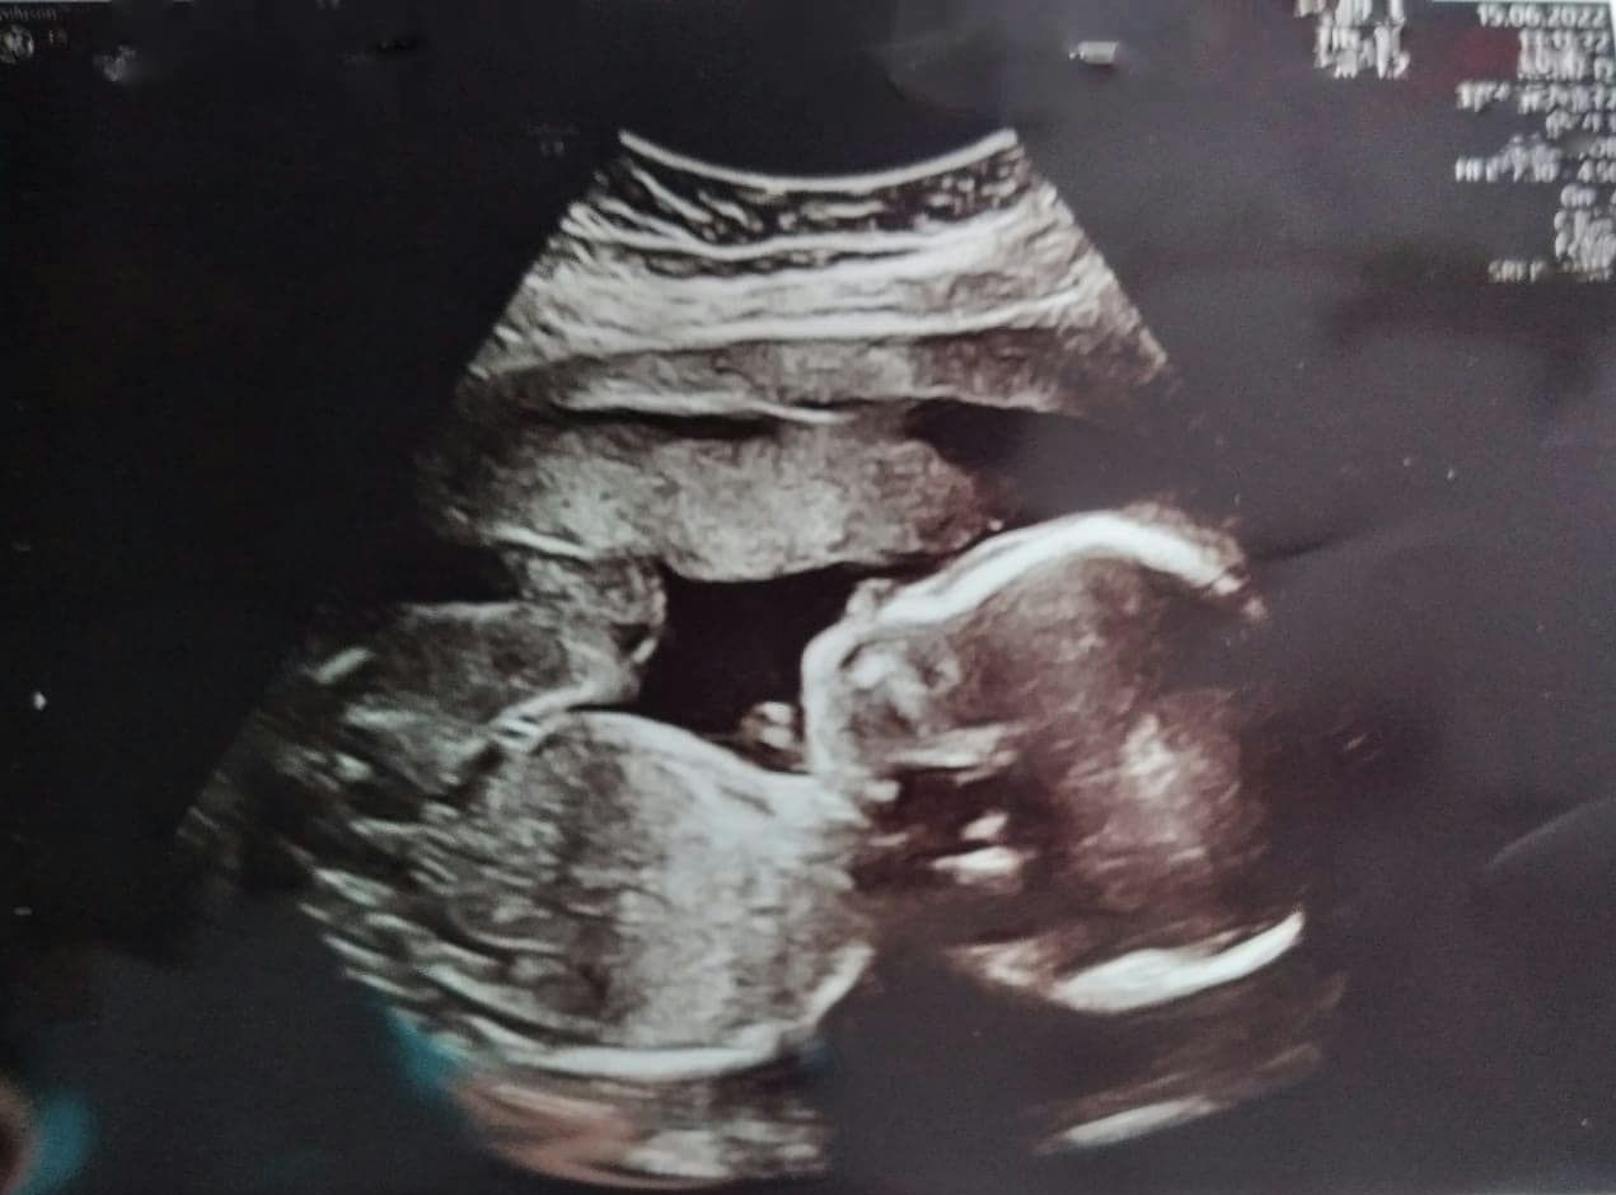 Die Niederösterreicherin Caroline F. erwartet im Oktober ihr erstes Kind (Bild). Nach dem plötzlichen Tod ihres Verlobten muss sie das Baby alleine großziehen.